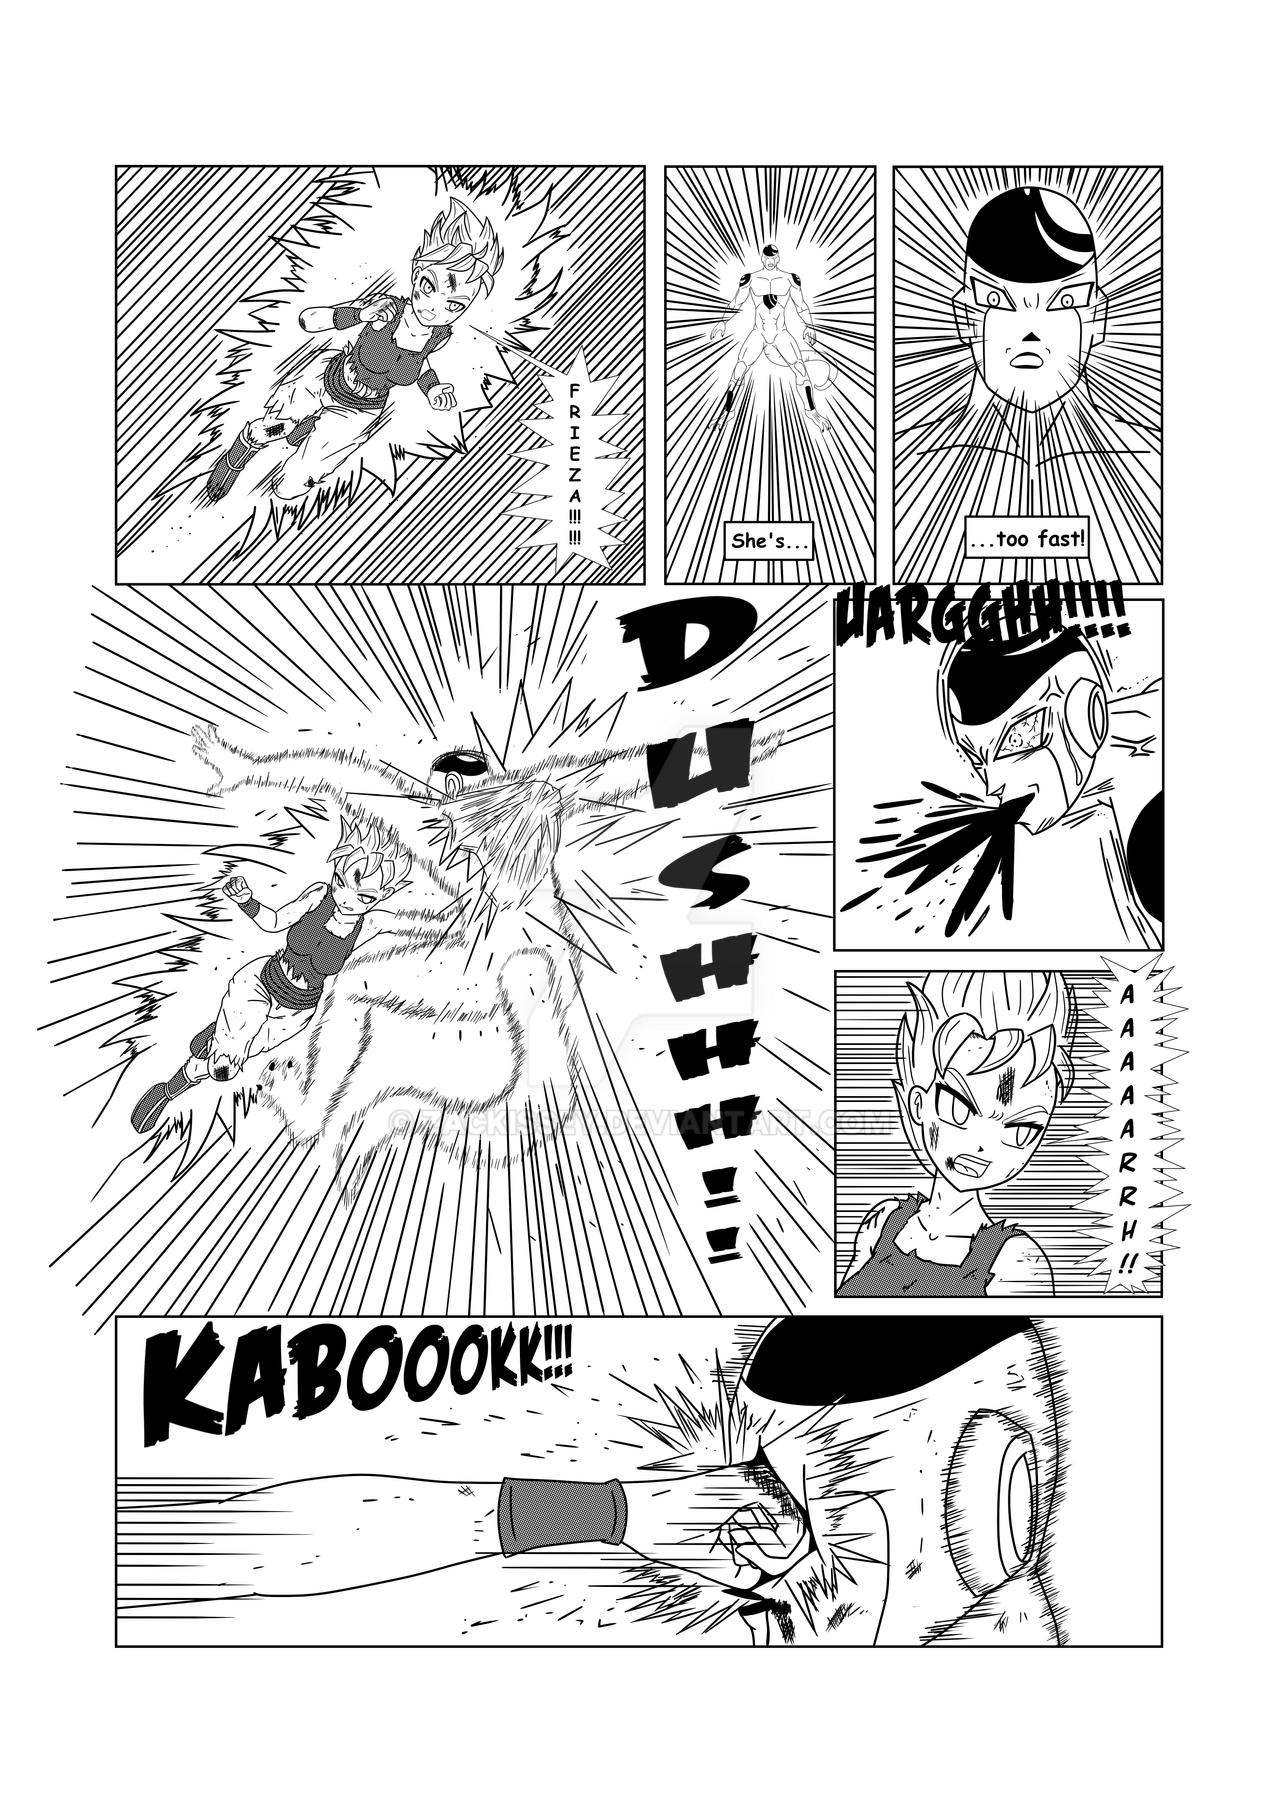 DBZ one-page Test Manga SSJ1 Fem-Goku vs Frieza by zackissey on DeviantArt